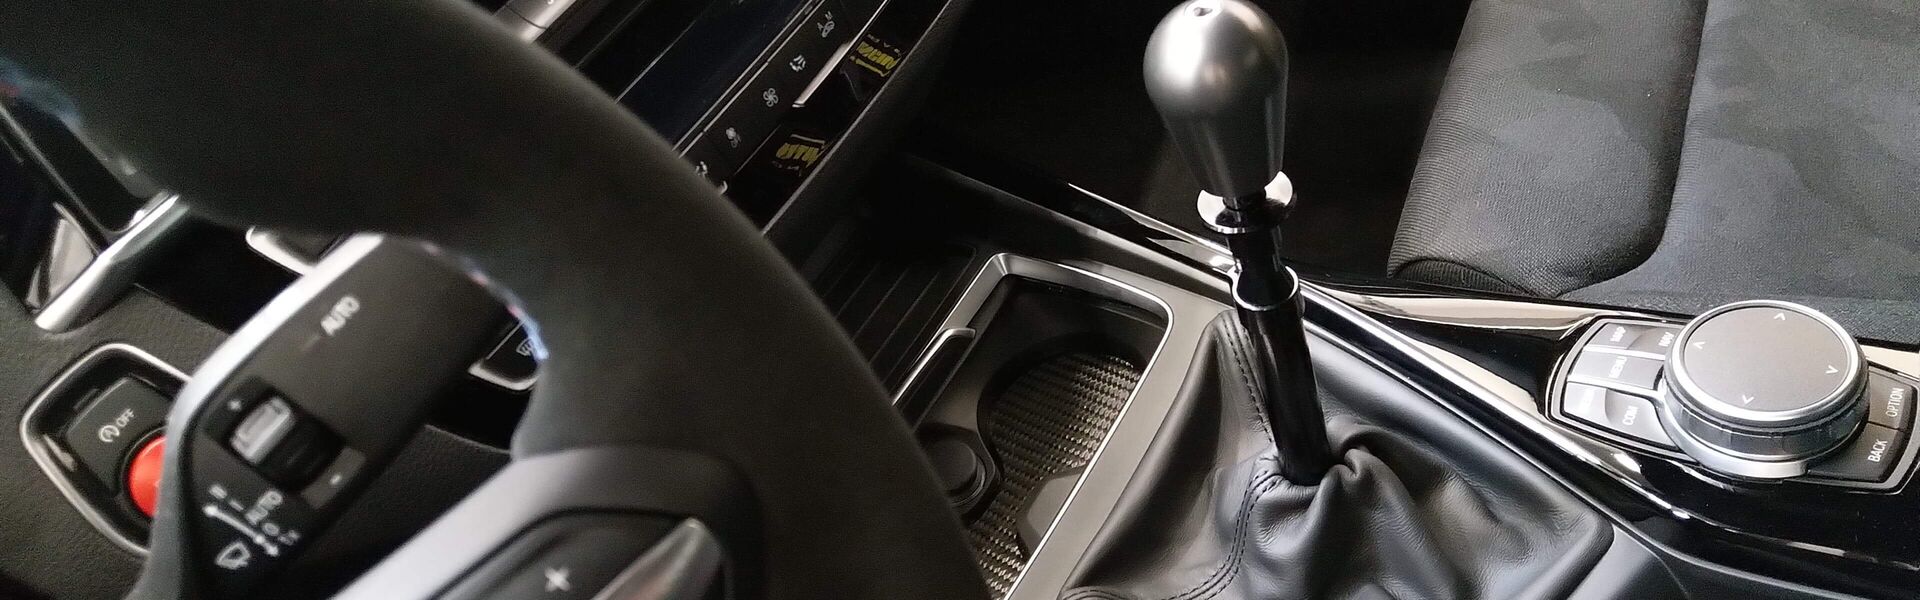 Převodovka/Řazení  pro automobil Ford Mustang GT